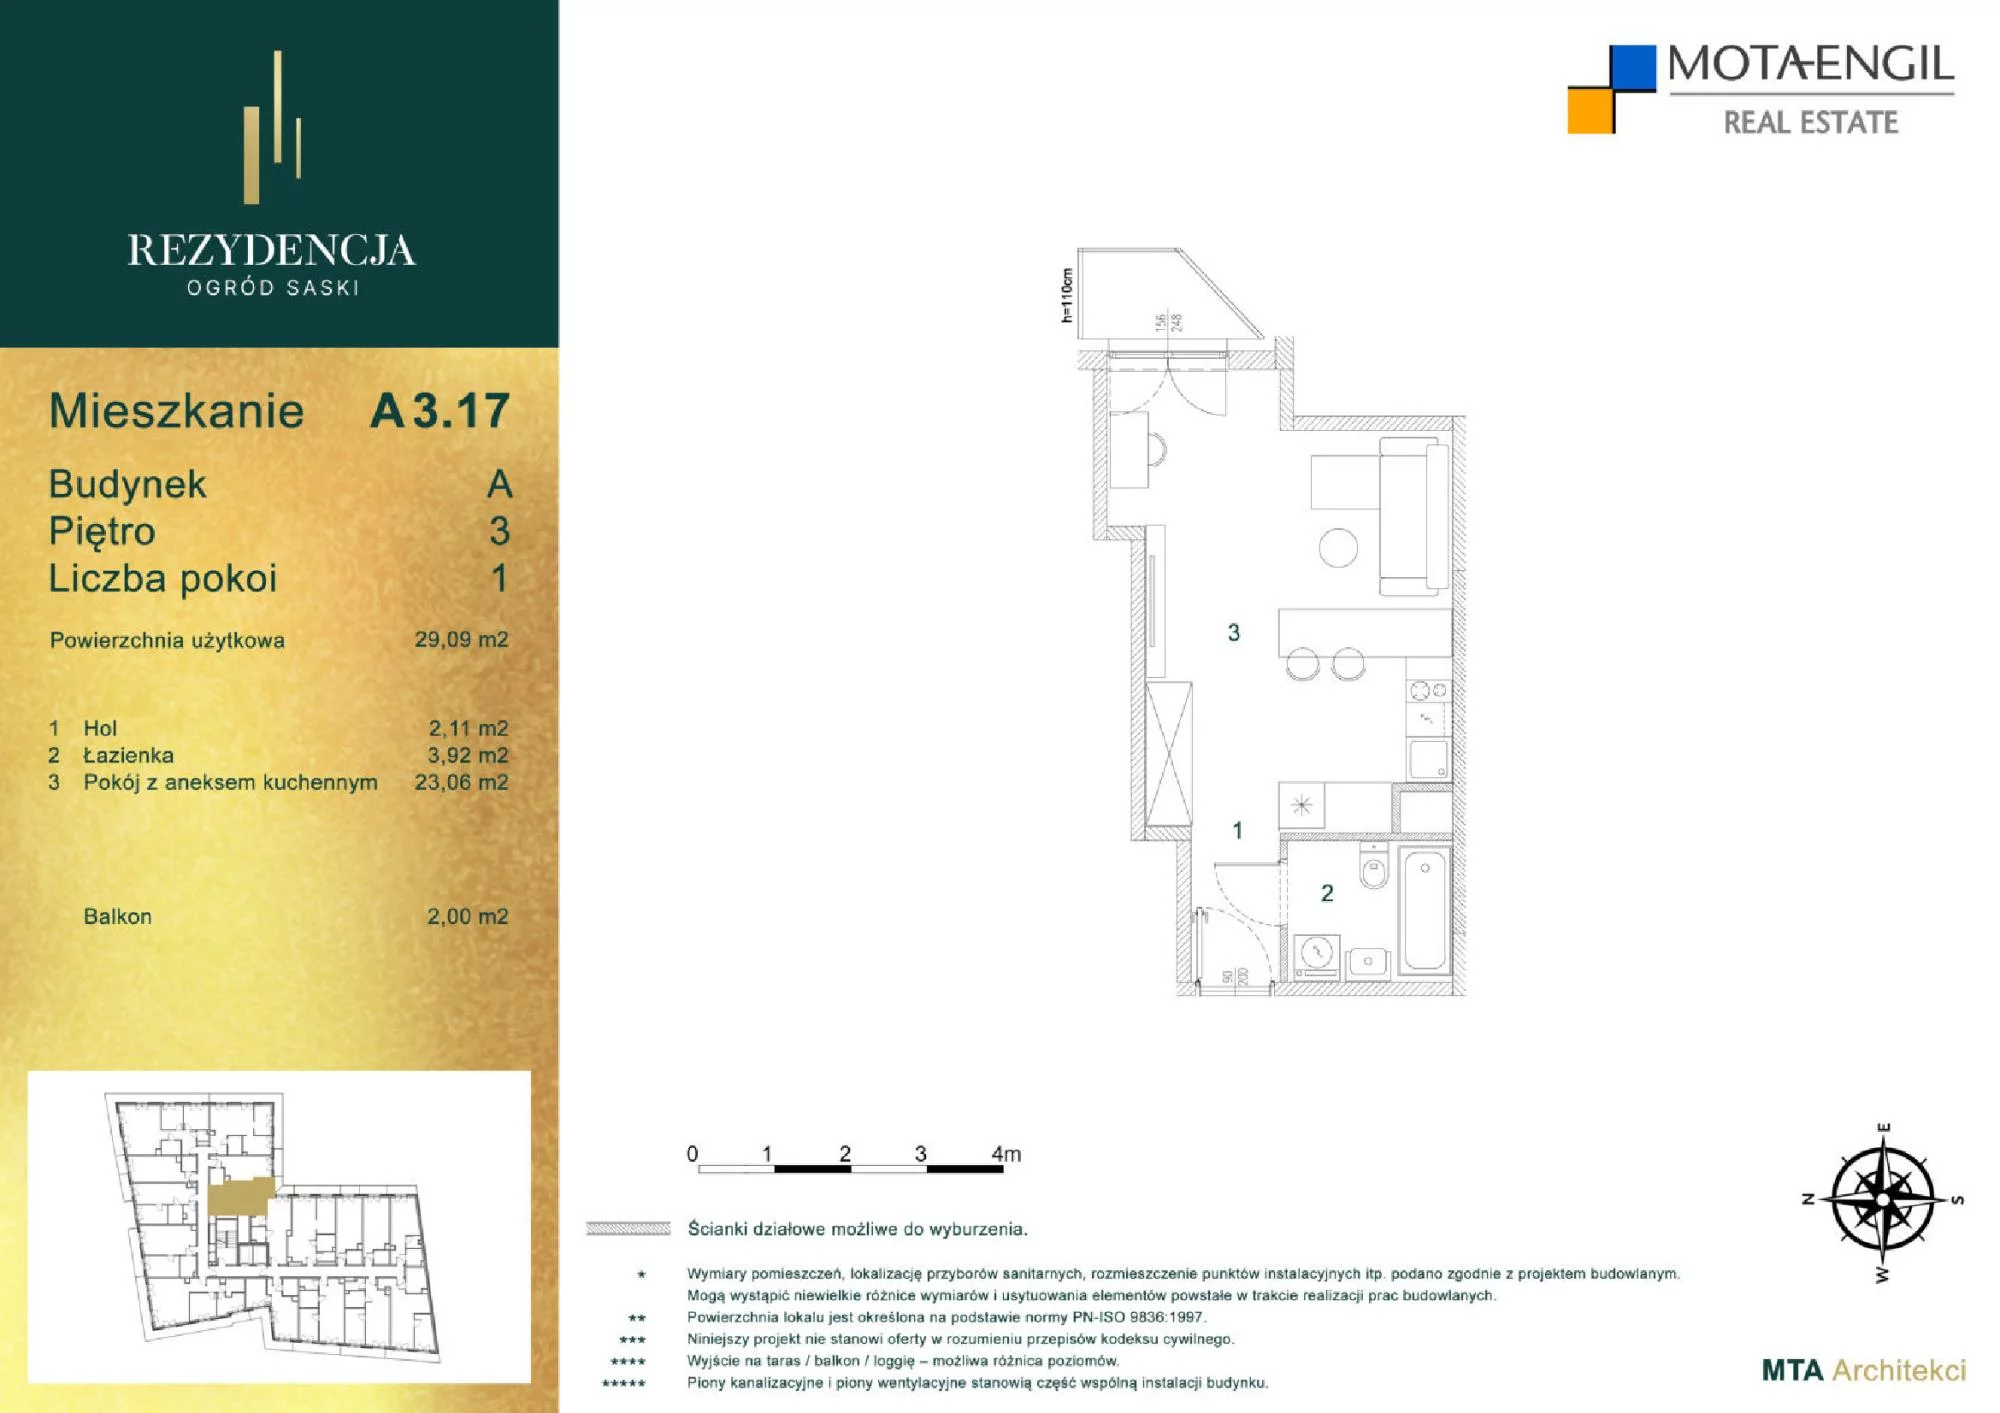 Mieszkanie 29,09 m², piętro 3, oferta nr A3.17, Rezydencja Ogród Saski, Lublin, Wieniawa, ul. Jasna 7, 7A